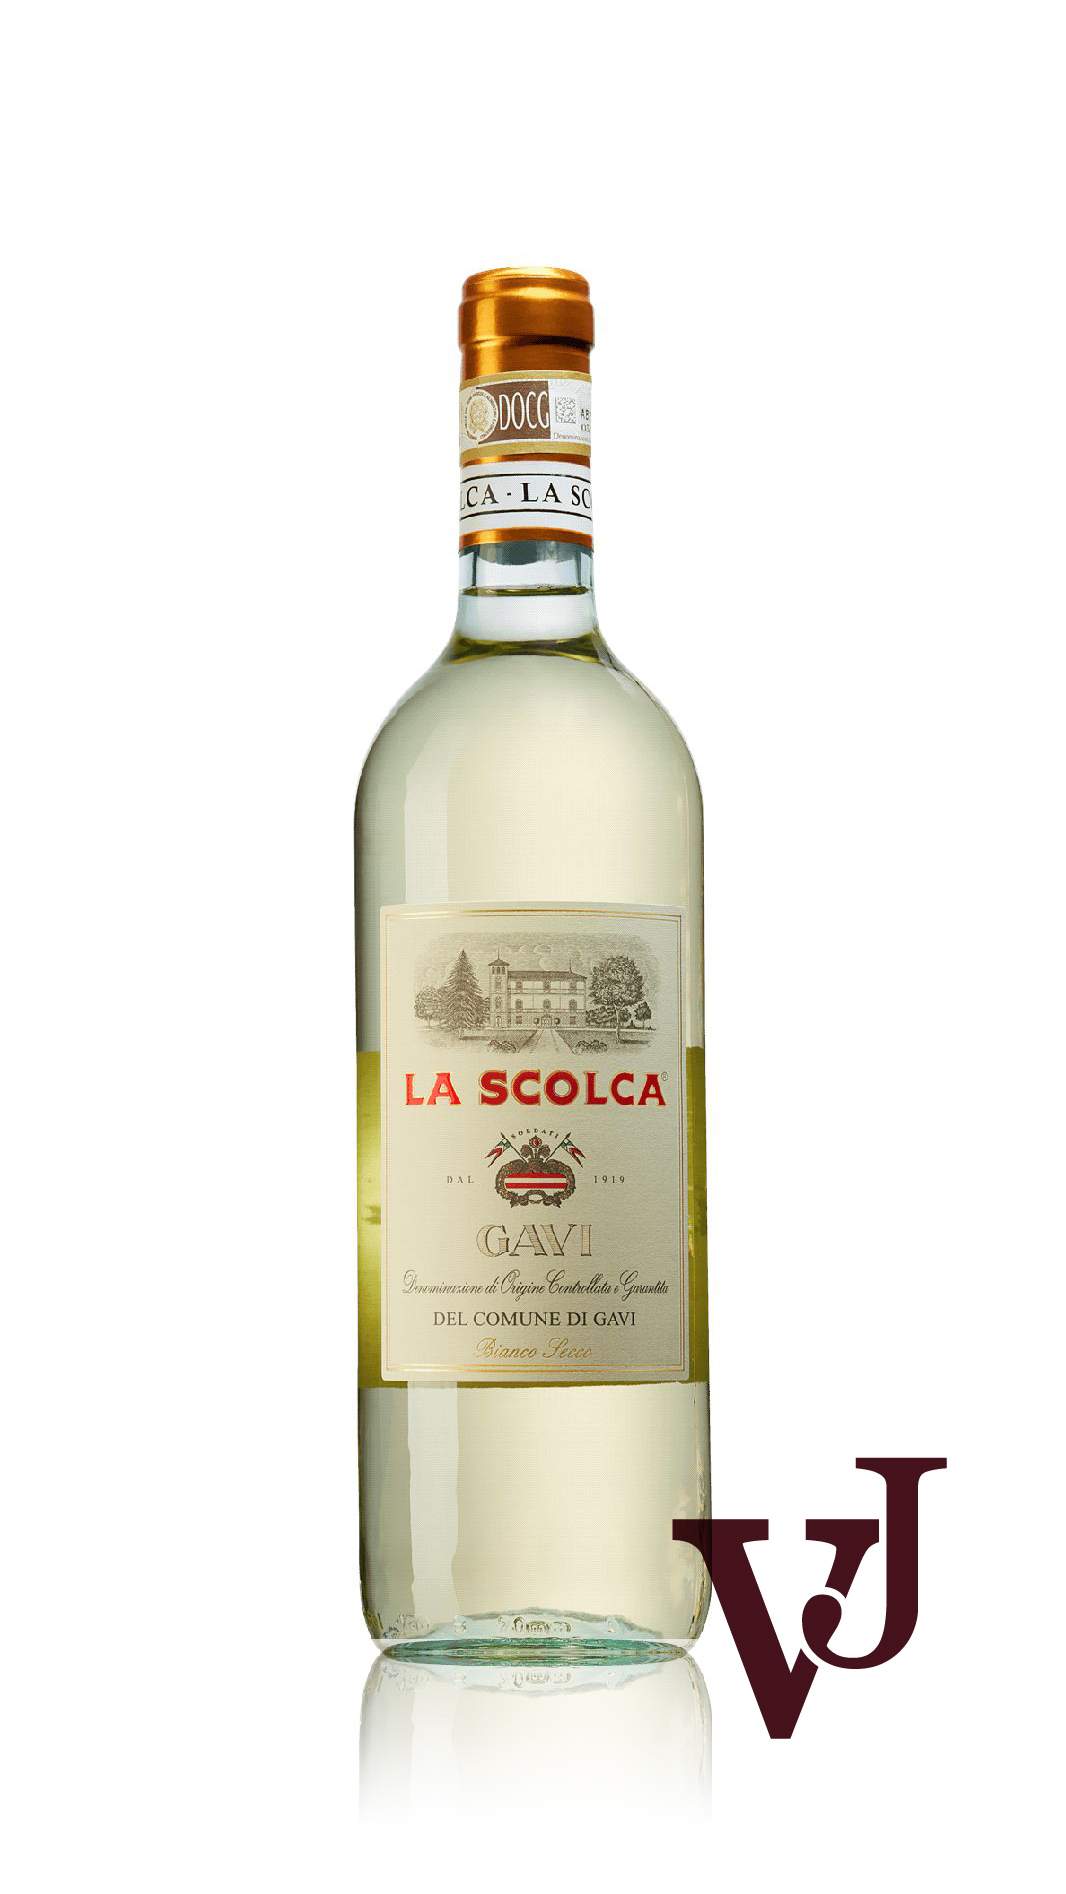 Vitt Vin - La Scolca Gavi artikel nummer 8370901 från producenten Azienda Agricola La Scolca Società Semplice från området Italien